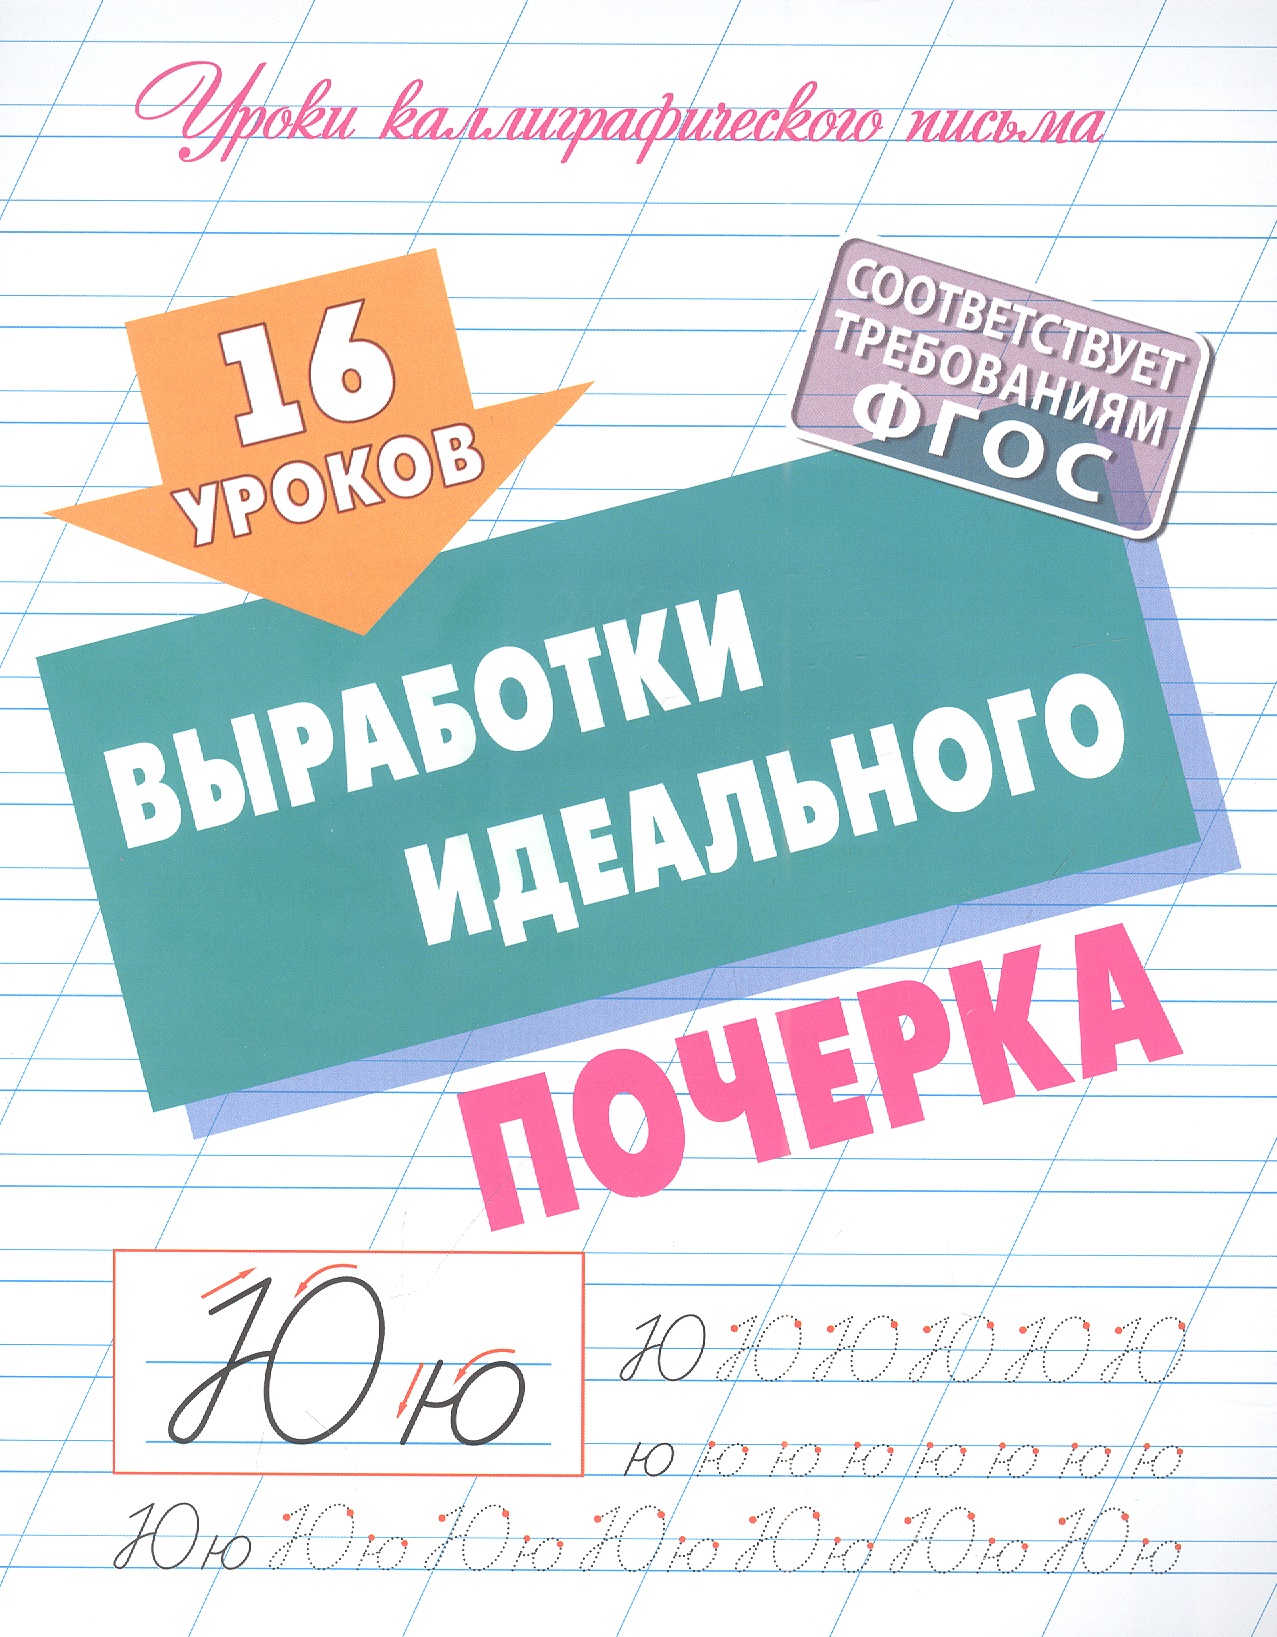 Петренко Станислав Викторович 16 уроков выработки идеального почерка